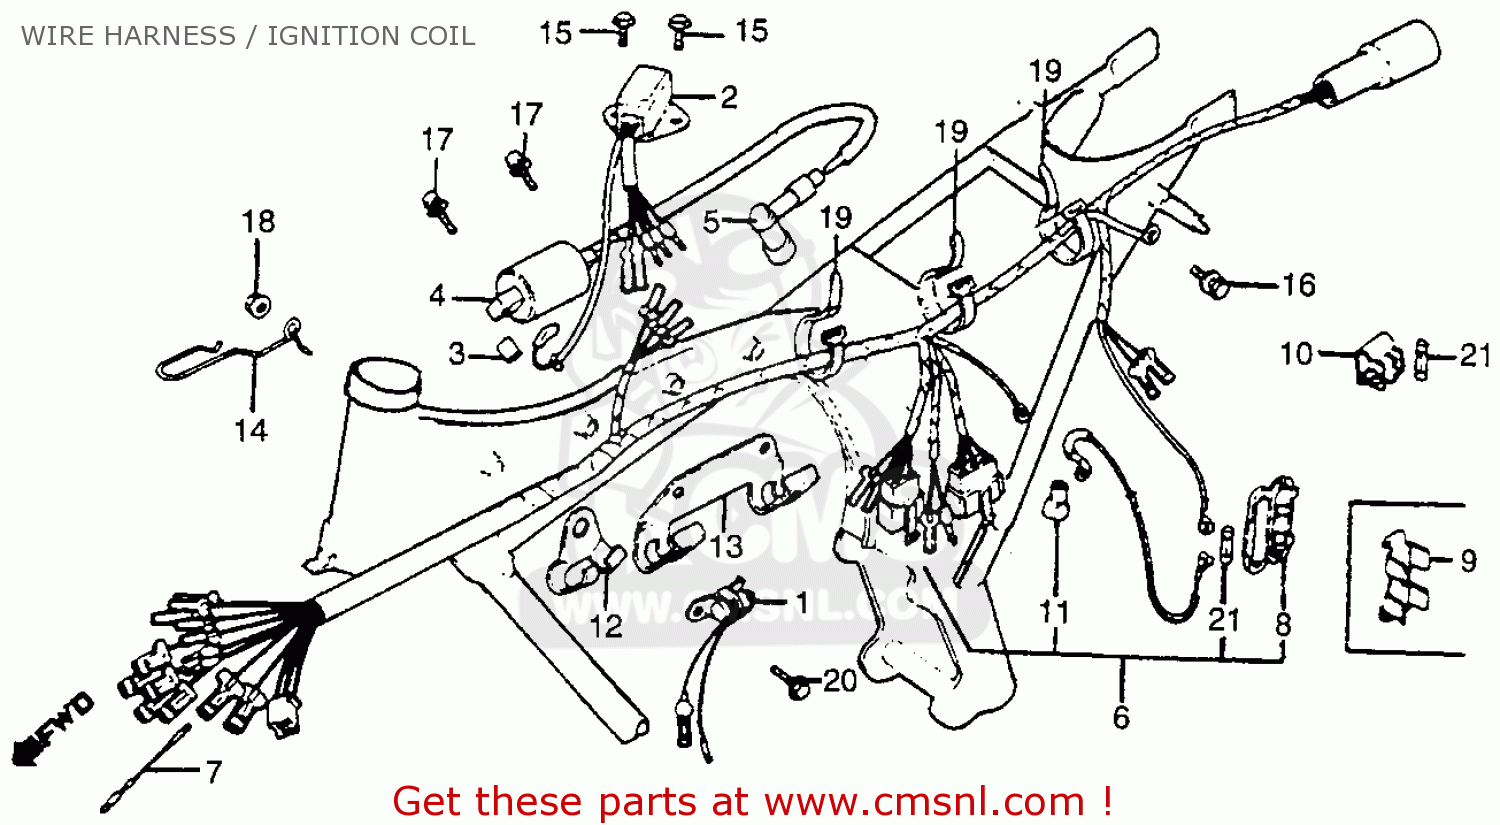 Honda Cb125s 1981 (b) Usa Wire Harness / Ignition Coil - schematic